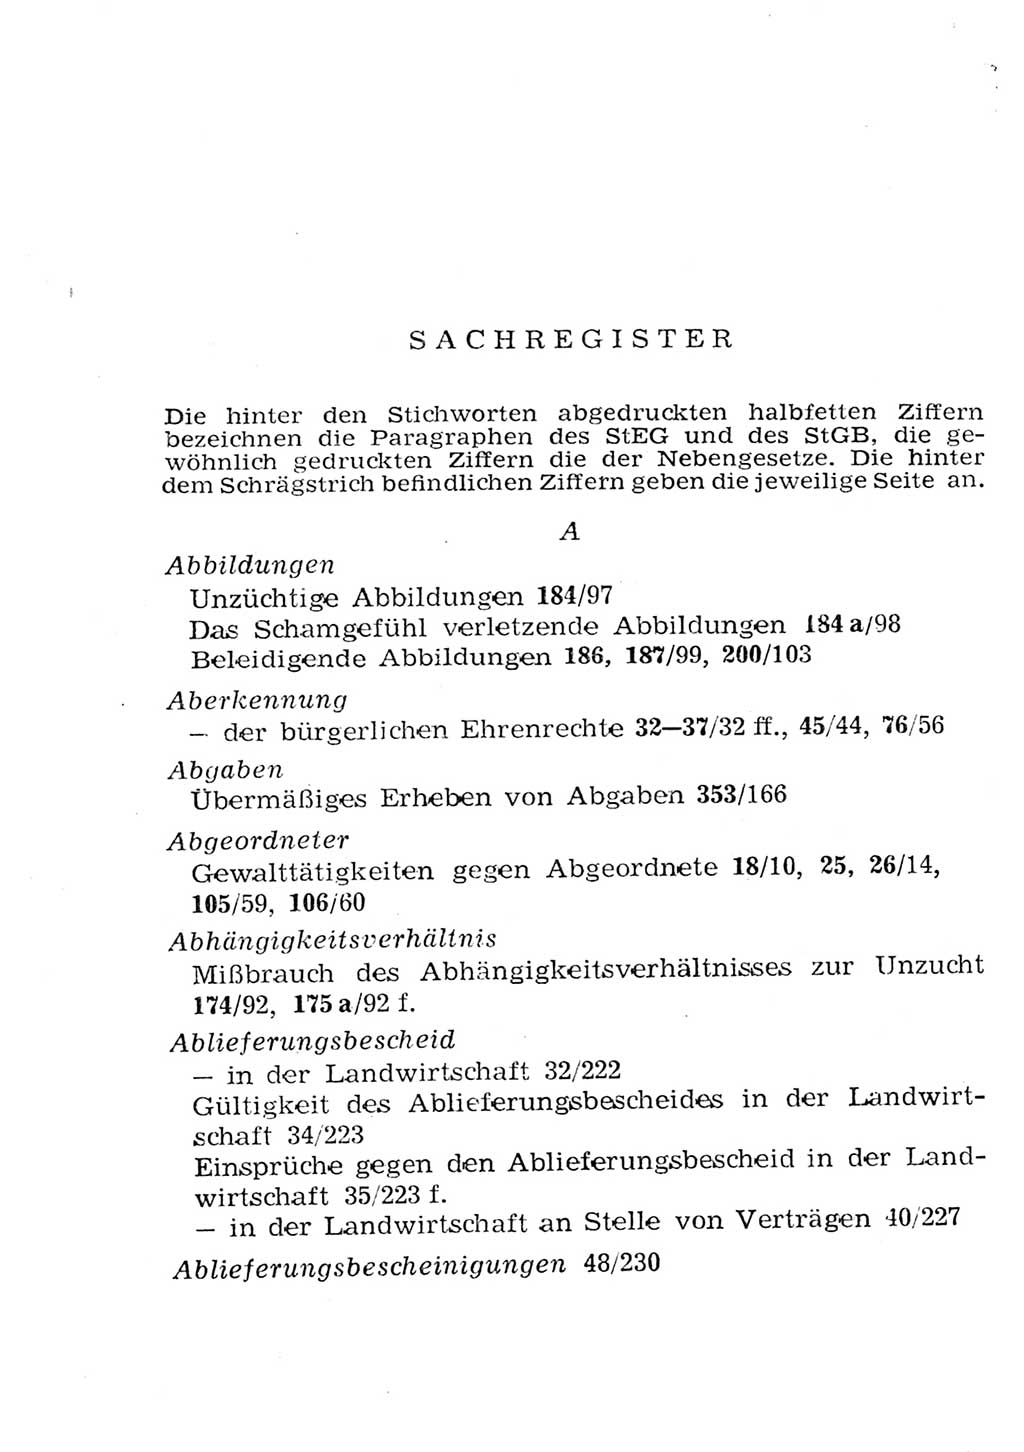 Strafgesetzbuch (StGB) und andere Strafgesetze [Deutsche Demokratische Republik (DDR)] 1957, Seite 434 (StGB Strafges. DDR 1957, S. 434)